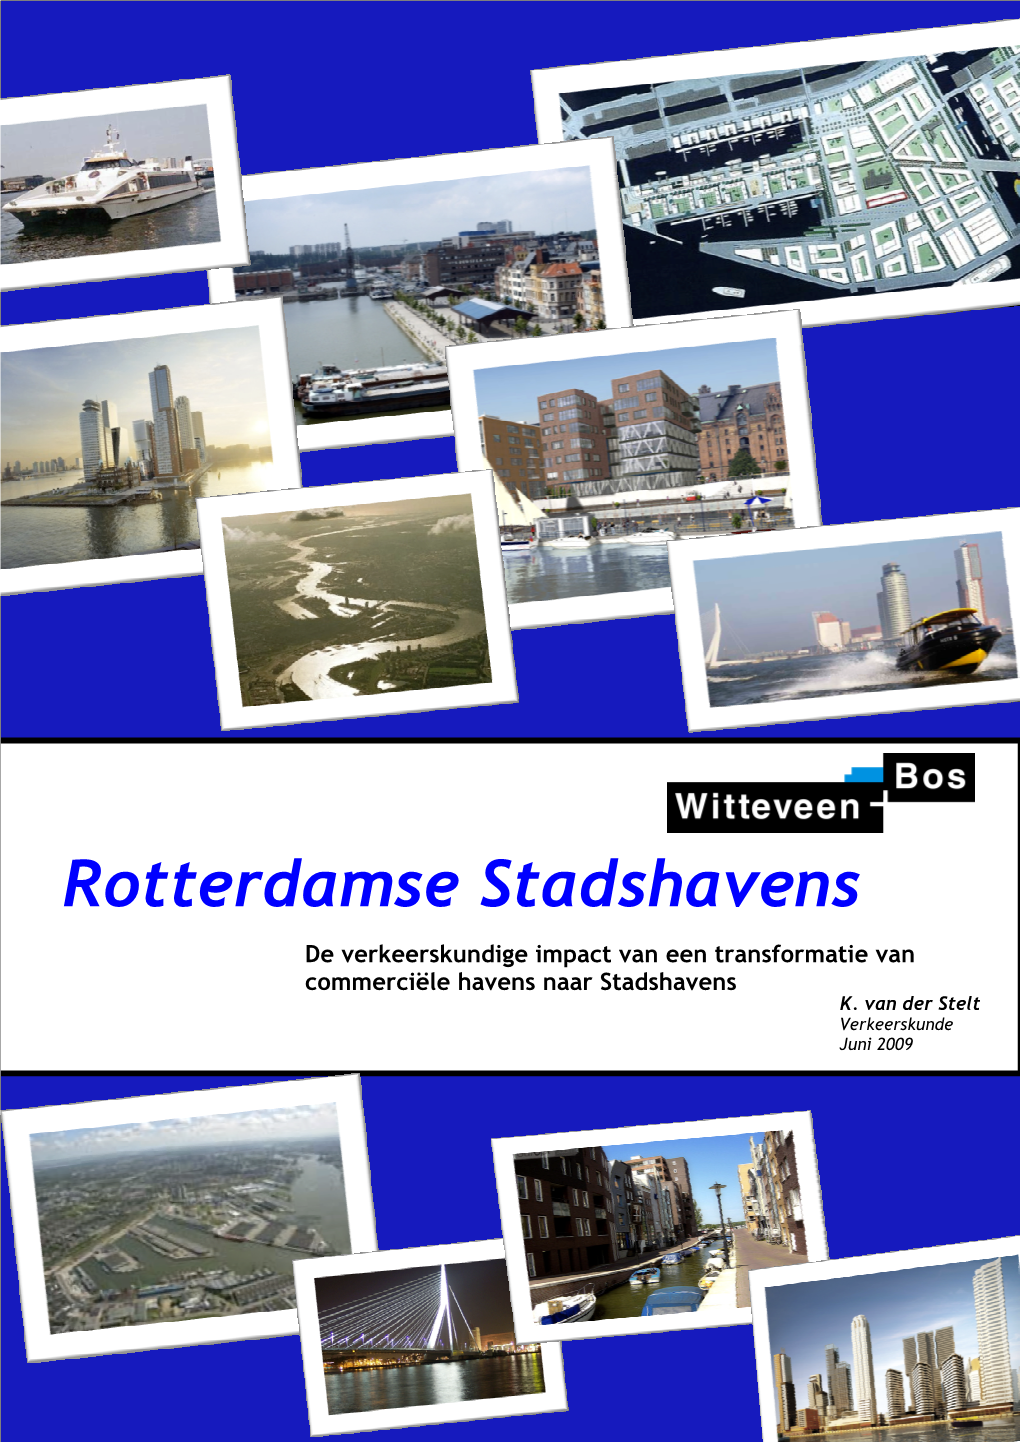 Rotterdamse Stadshavens